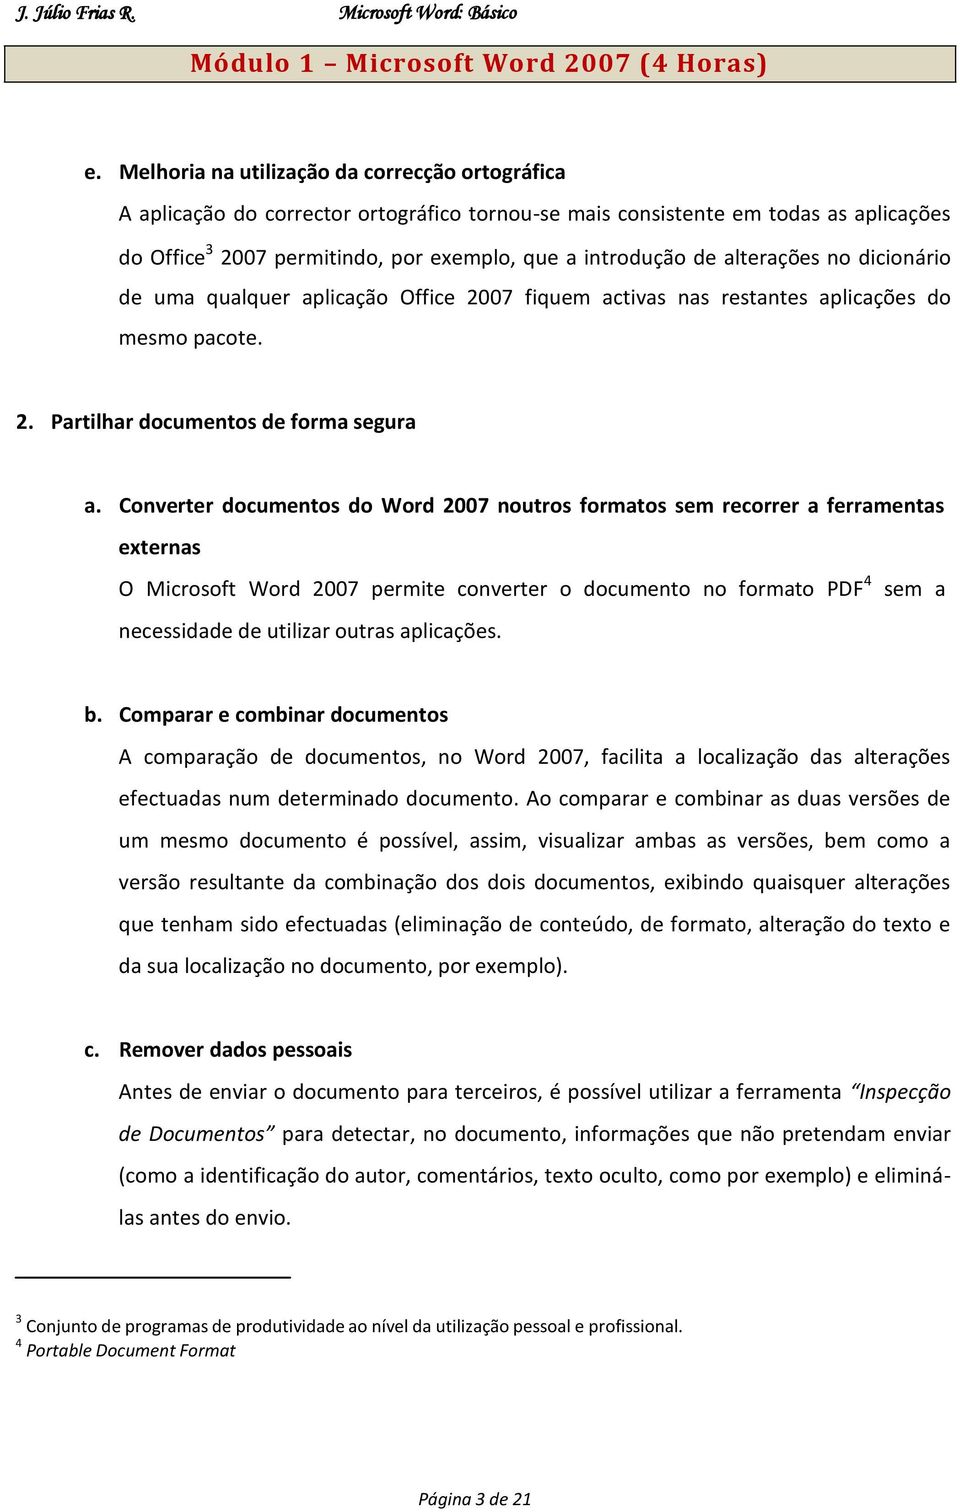 Converter documentos do Word 2007 noutros formatos sem recorrer a ferramentas externas O Microsoft Word 2007 permite converter o documento no formato PDF 4 sem a necessidade de utilizar outras